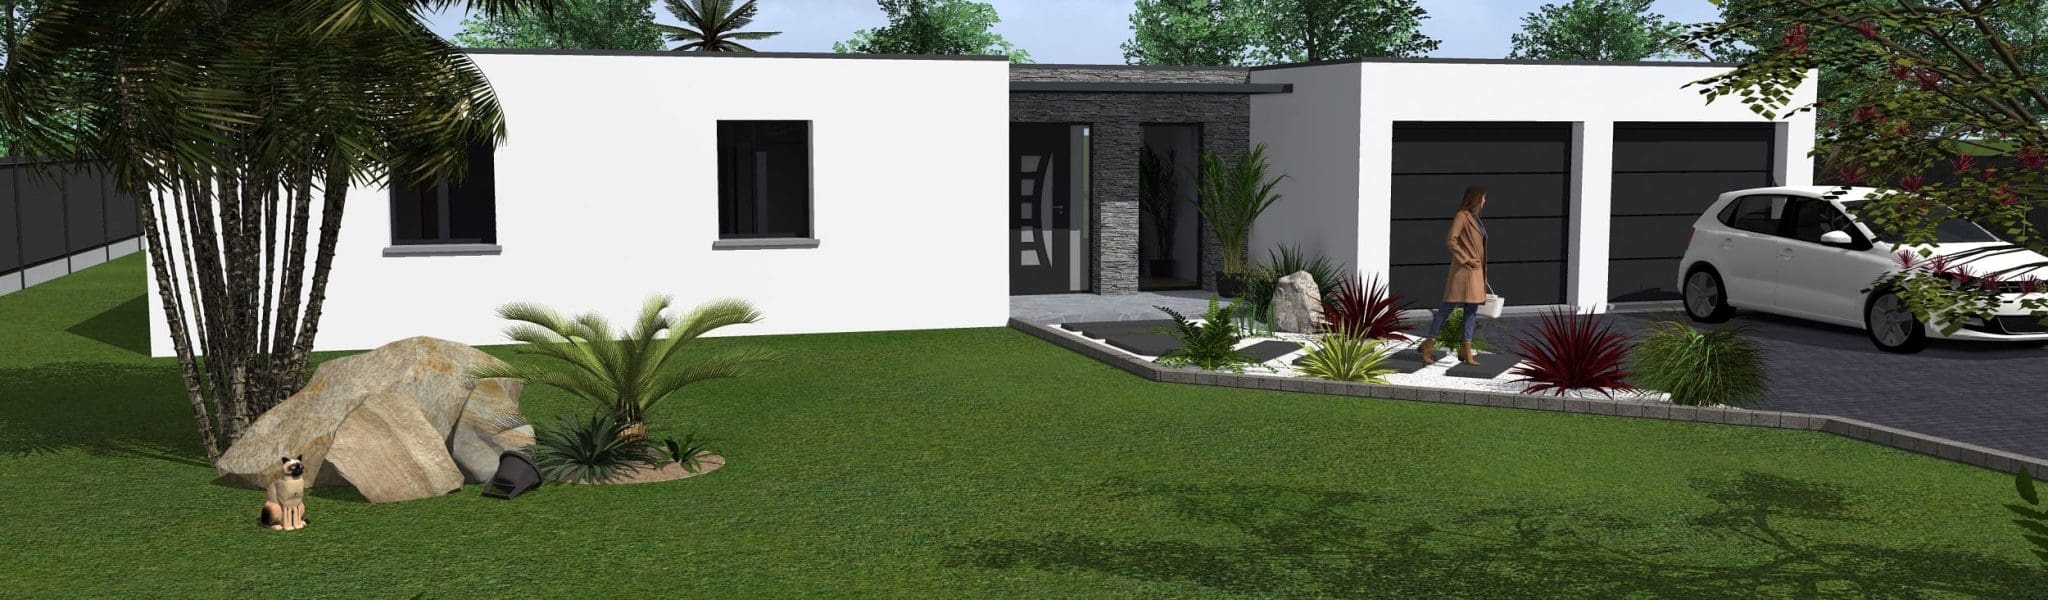 Modèle de maison avec toit plat, espace parking et grand jardin